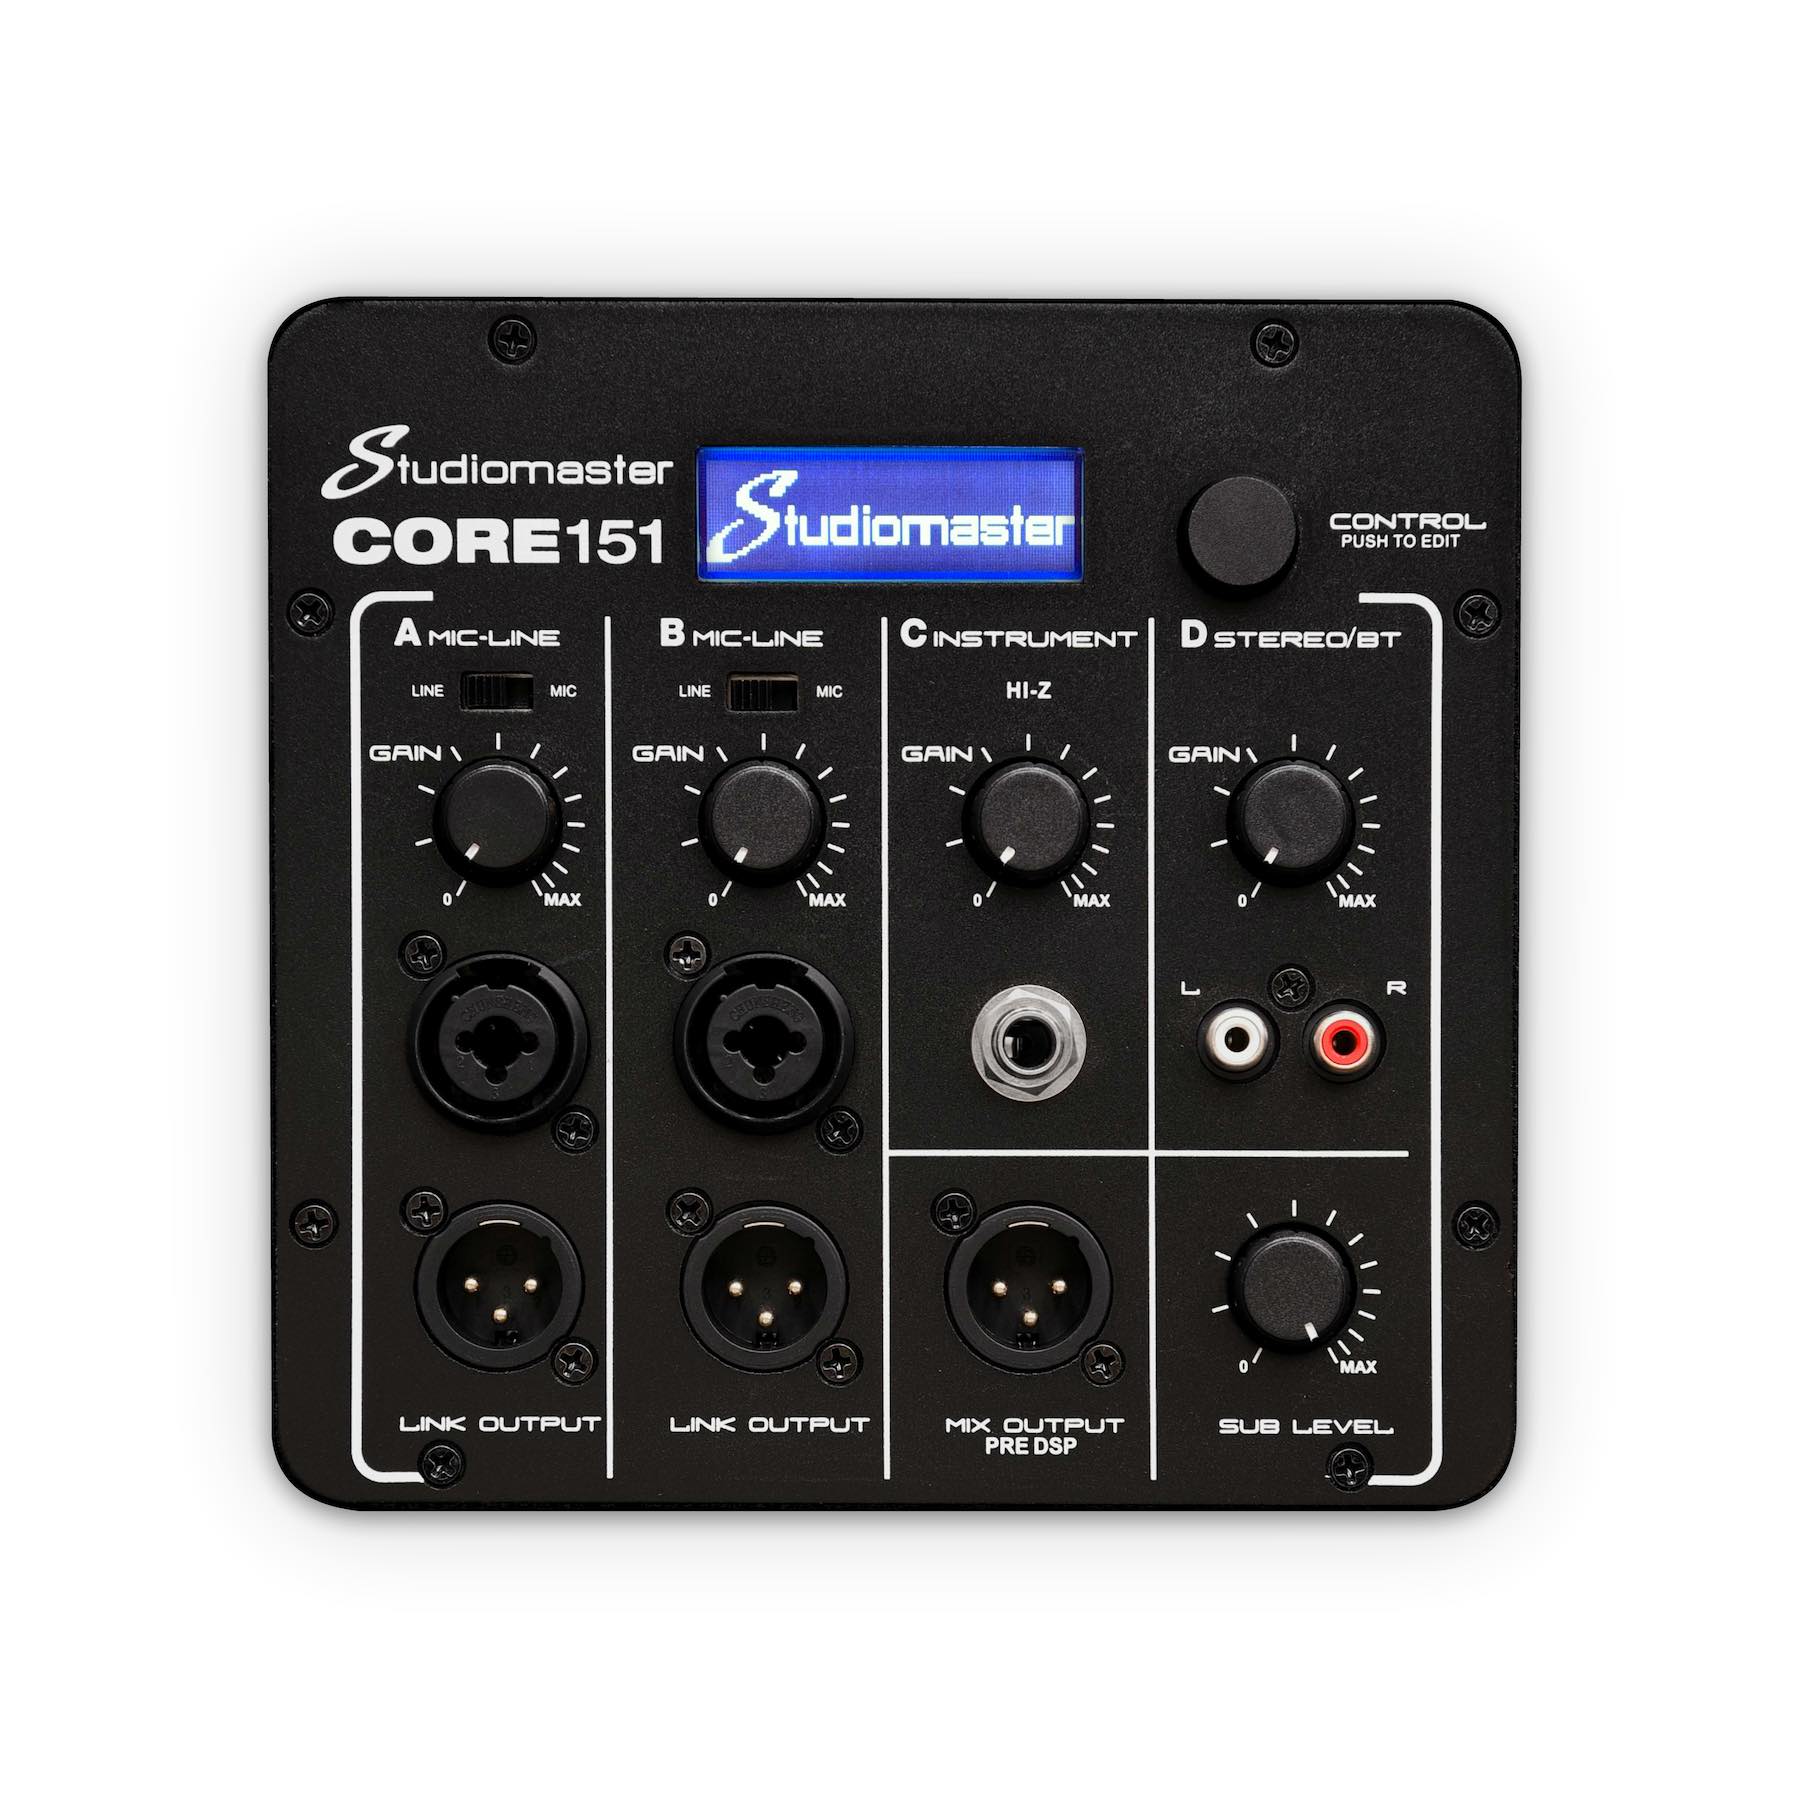 Studiomaster CORE 151 module control panel